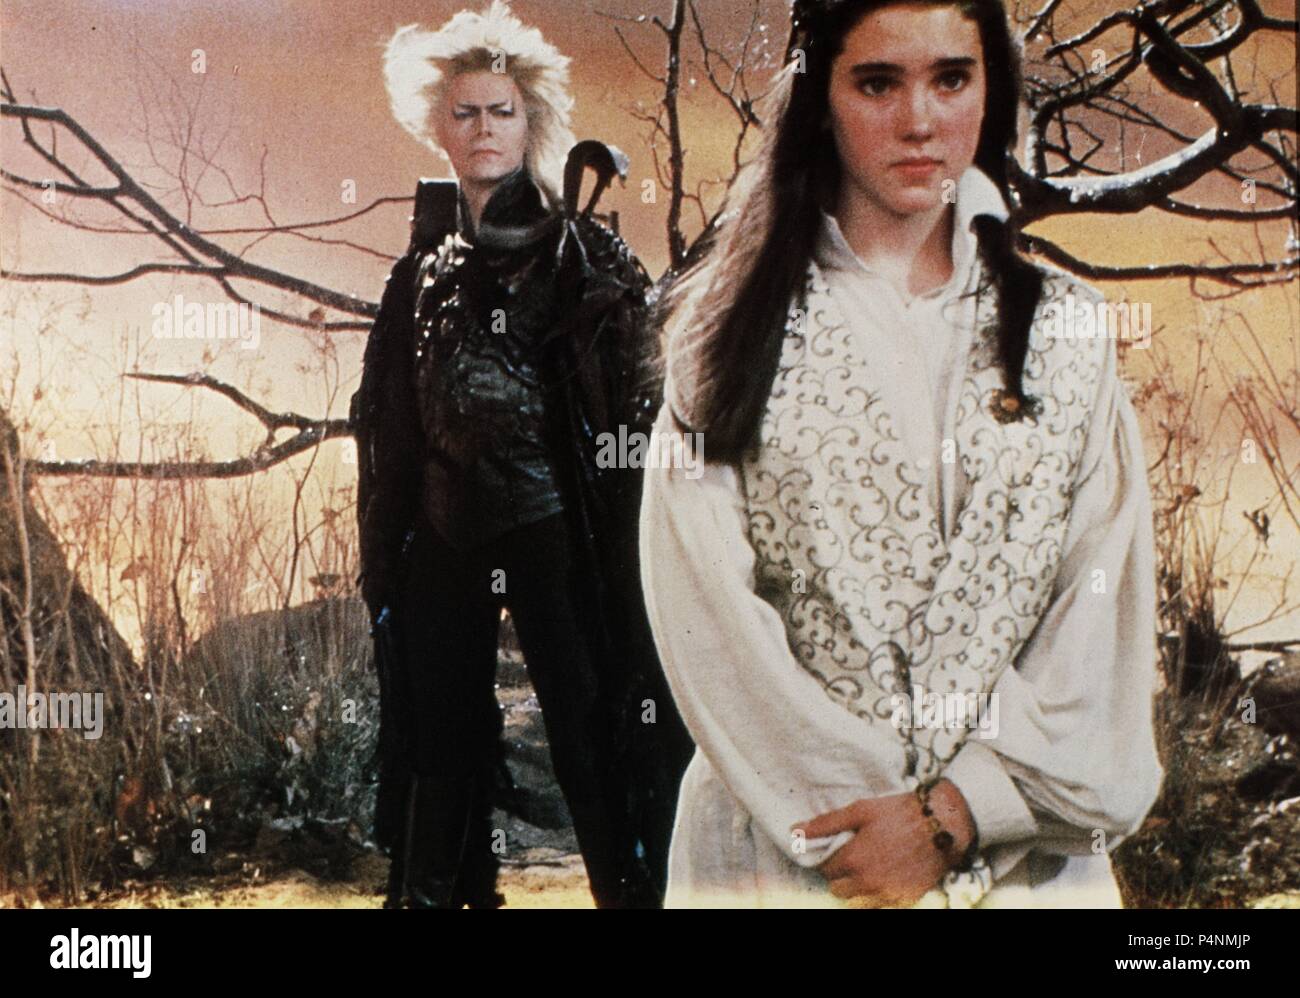 Cinéfilos Rebeldes - Labyrinth (Laberinto en Hispanoamérica y Dentro  del laberinto en España) se estrenó en Estados Unidos el 27 de Junio de  1986. Fue dirigida por Jim Henson y producida por